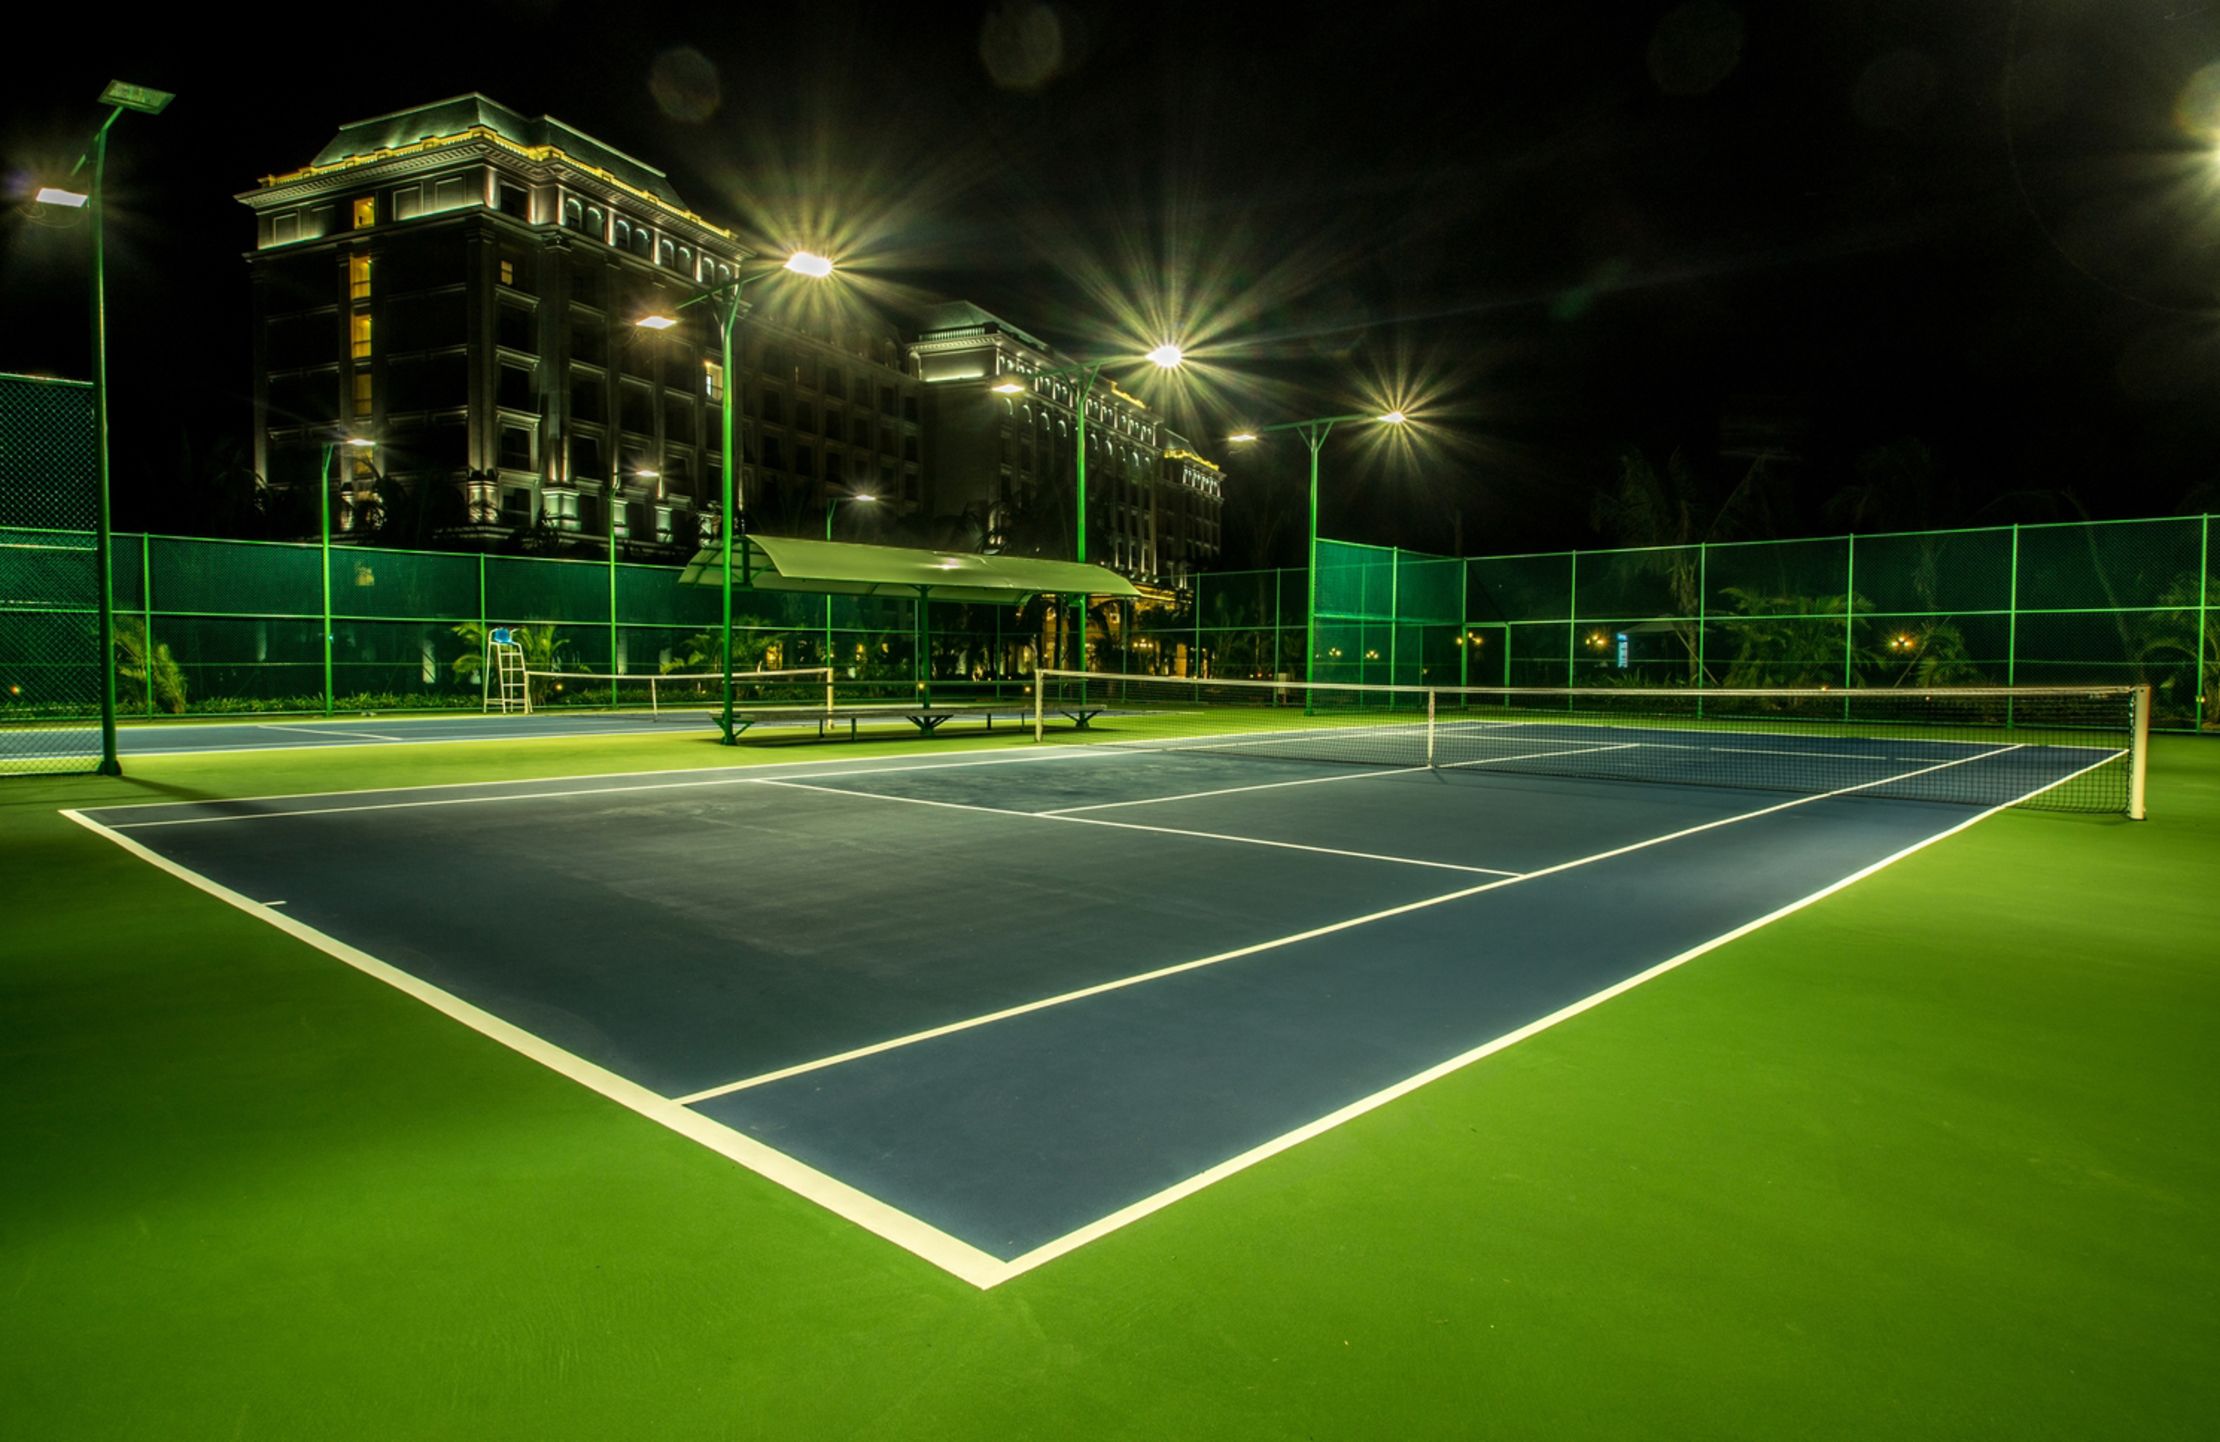 Основные характеристики теннисного корта: размеры, длина, ширина, сетка, покрытие, разметка